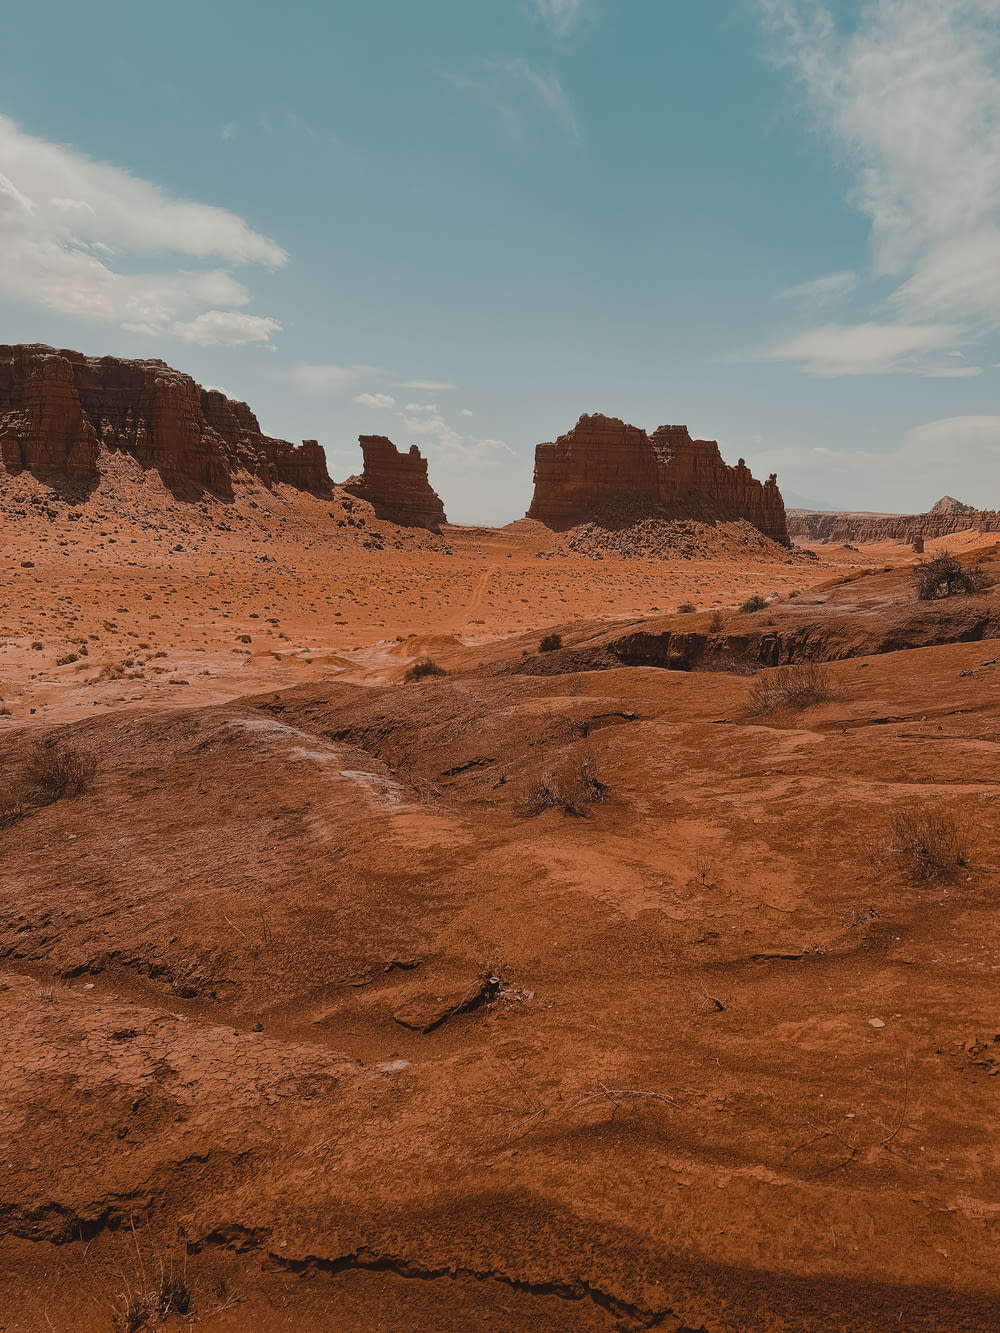 a desert landscape with a few tall rocks